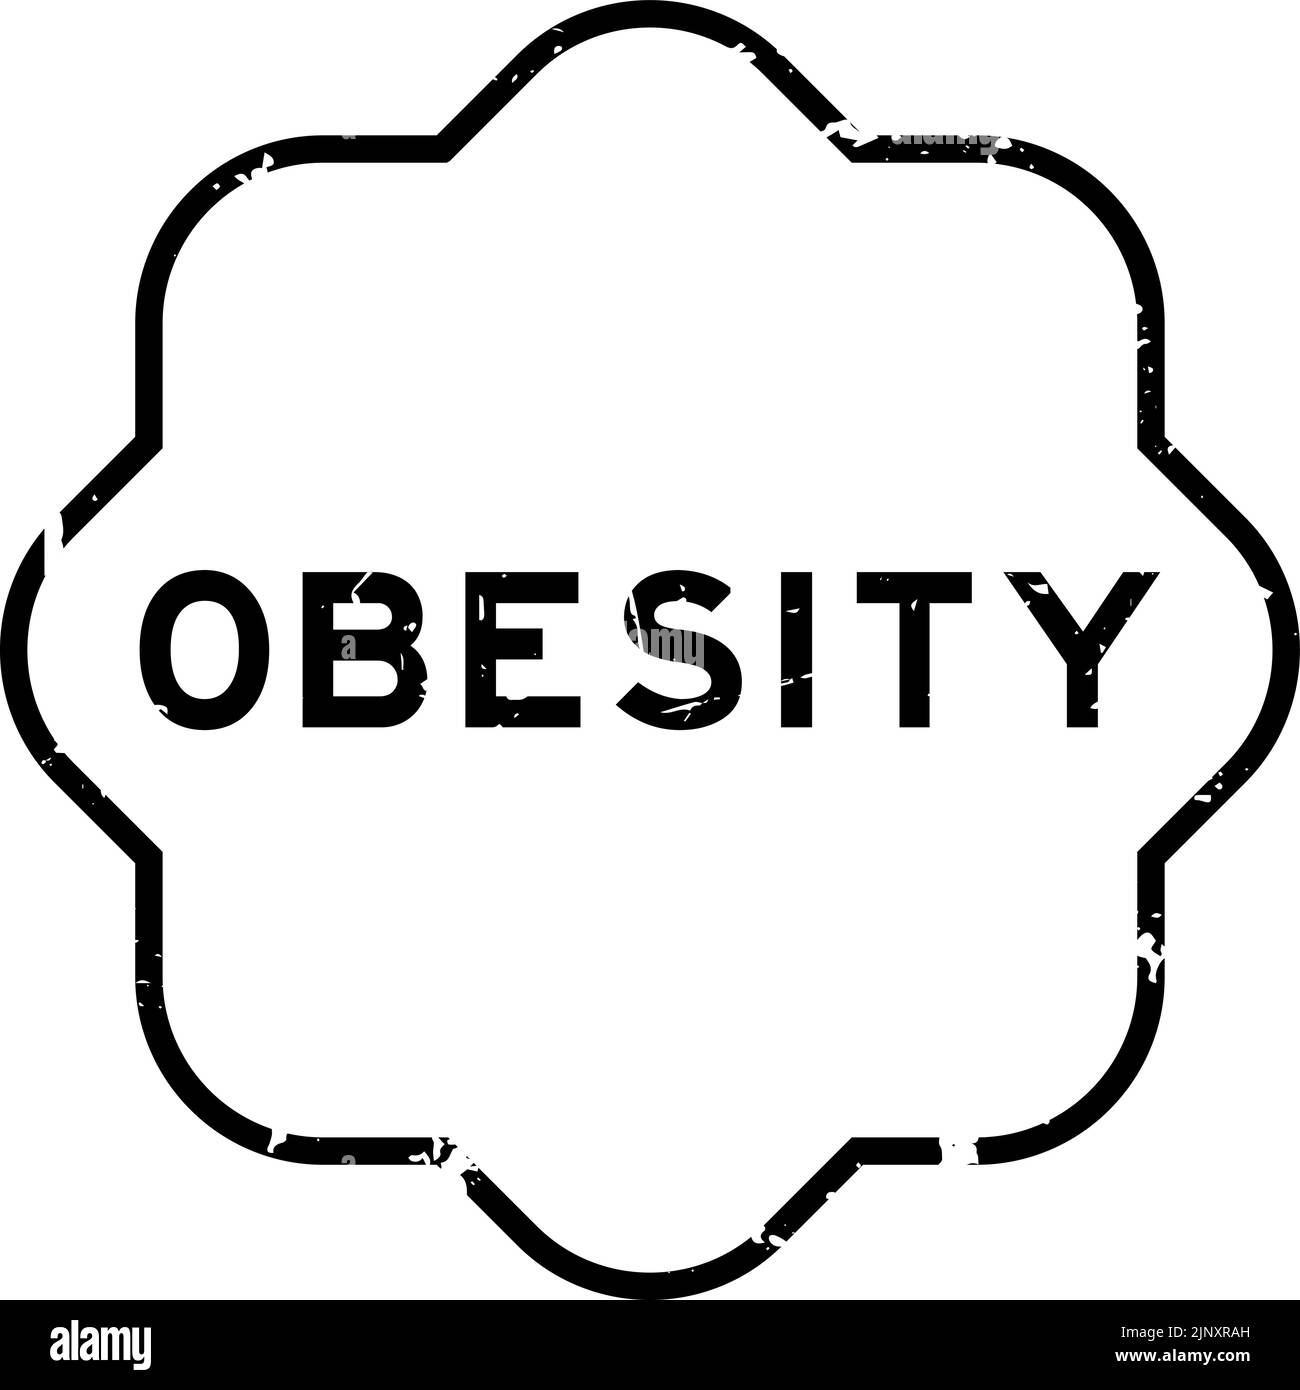 Grunge noir obésité mot caoutchouc cachet sur fond blanc Illustration de Vecteur